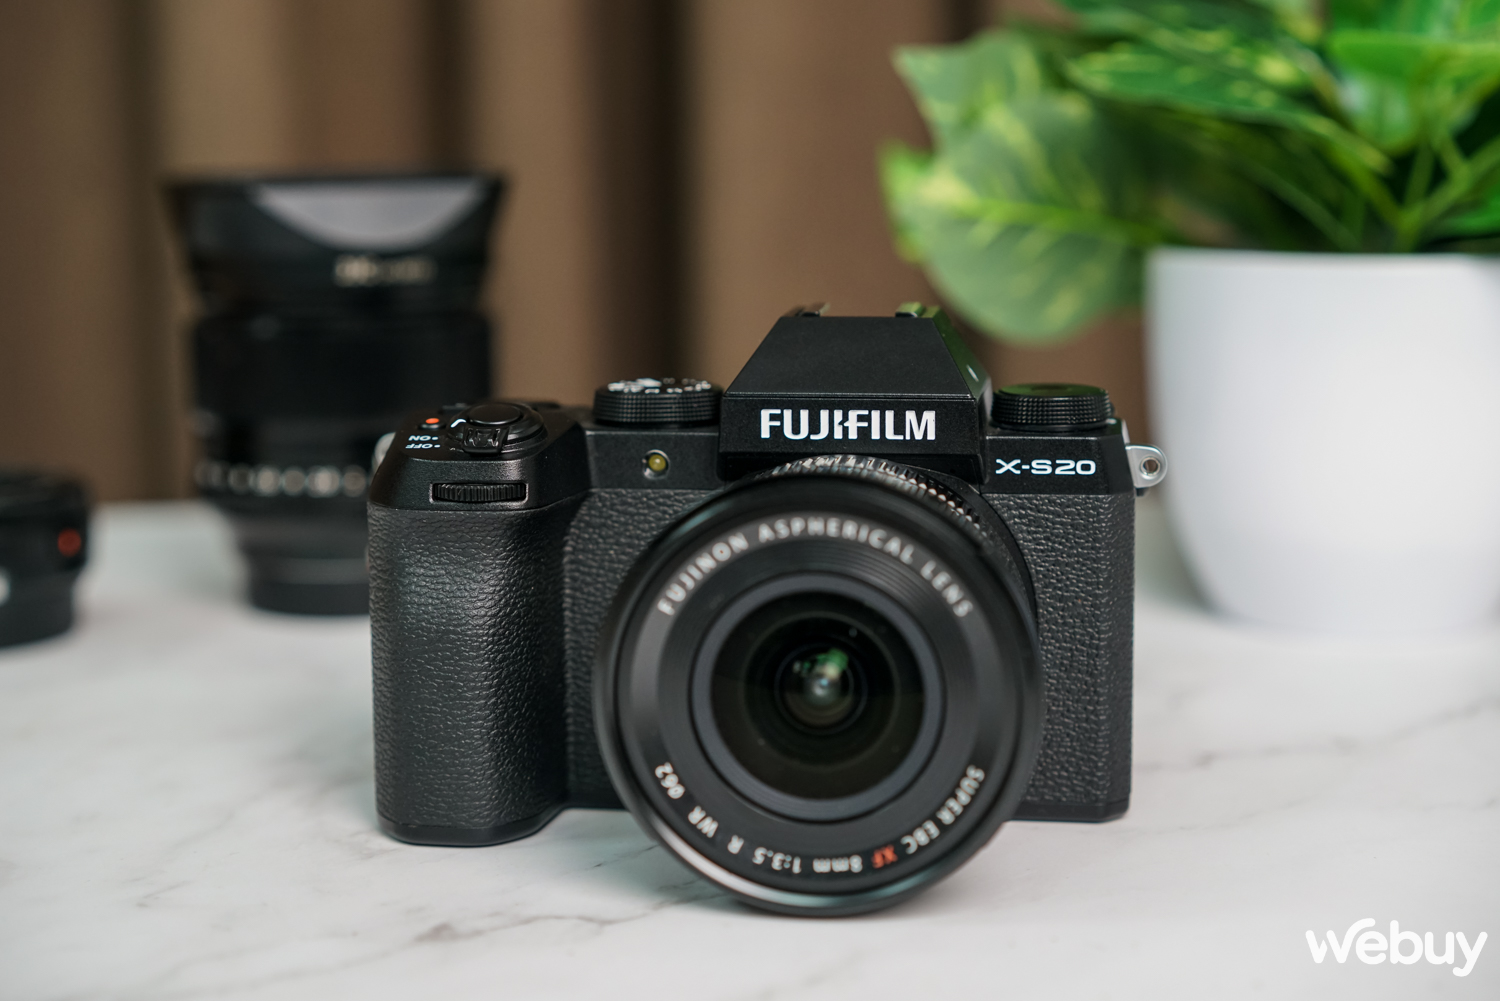 Ra đường chụp ảnh với Fujifilm X-S20: Không còn là dòng máy 'nhập môn' - Ảnh 2.